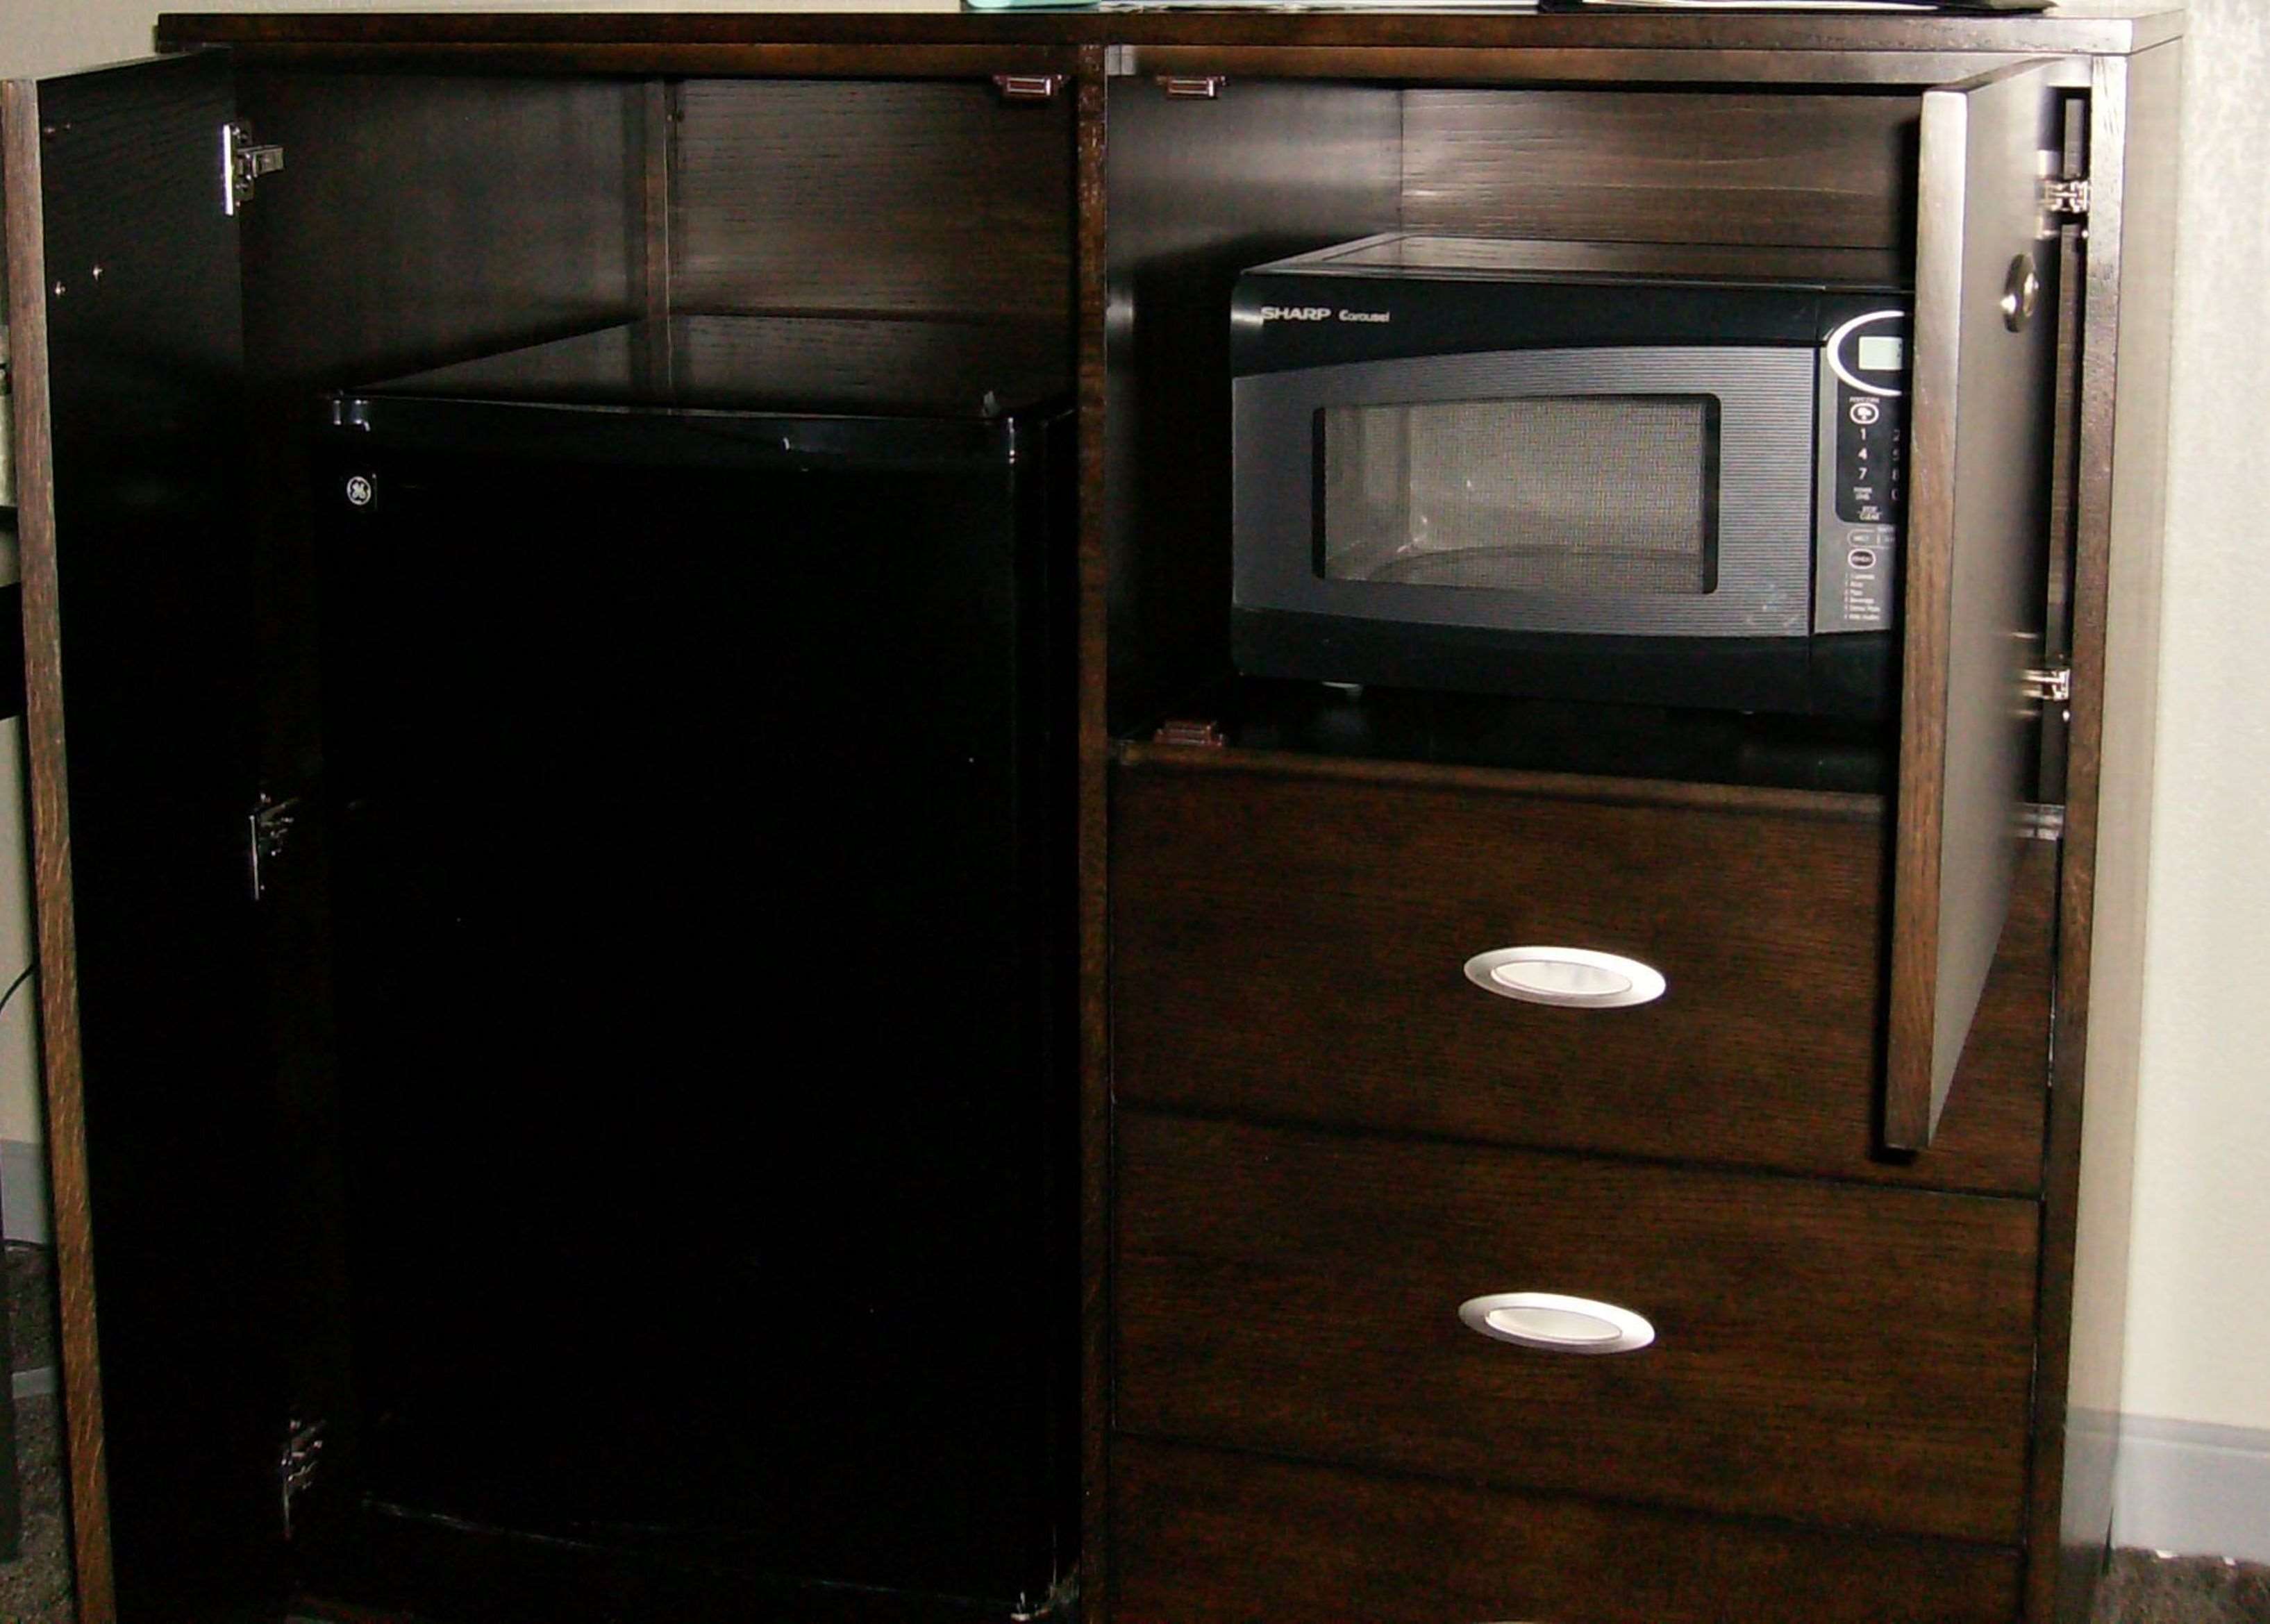 Microwave & Refrigerator